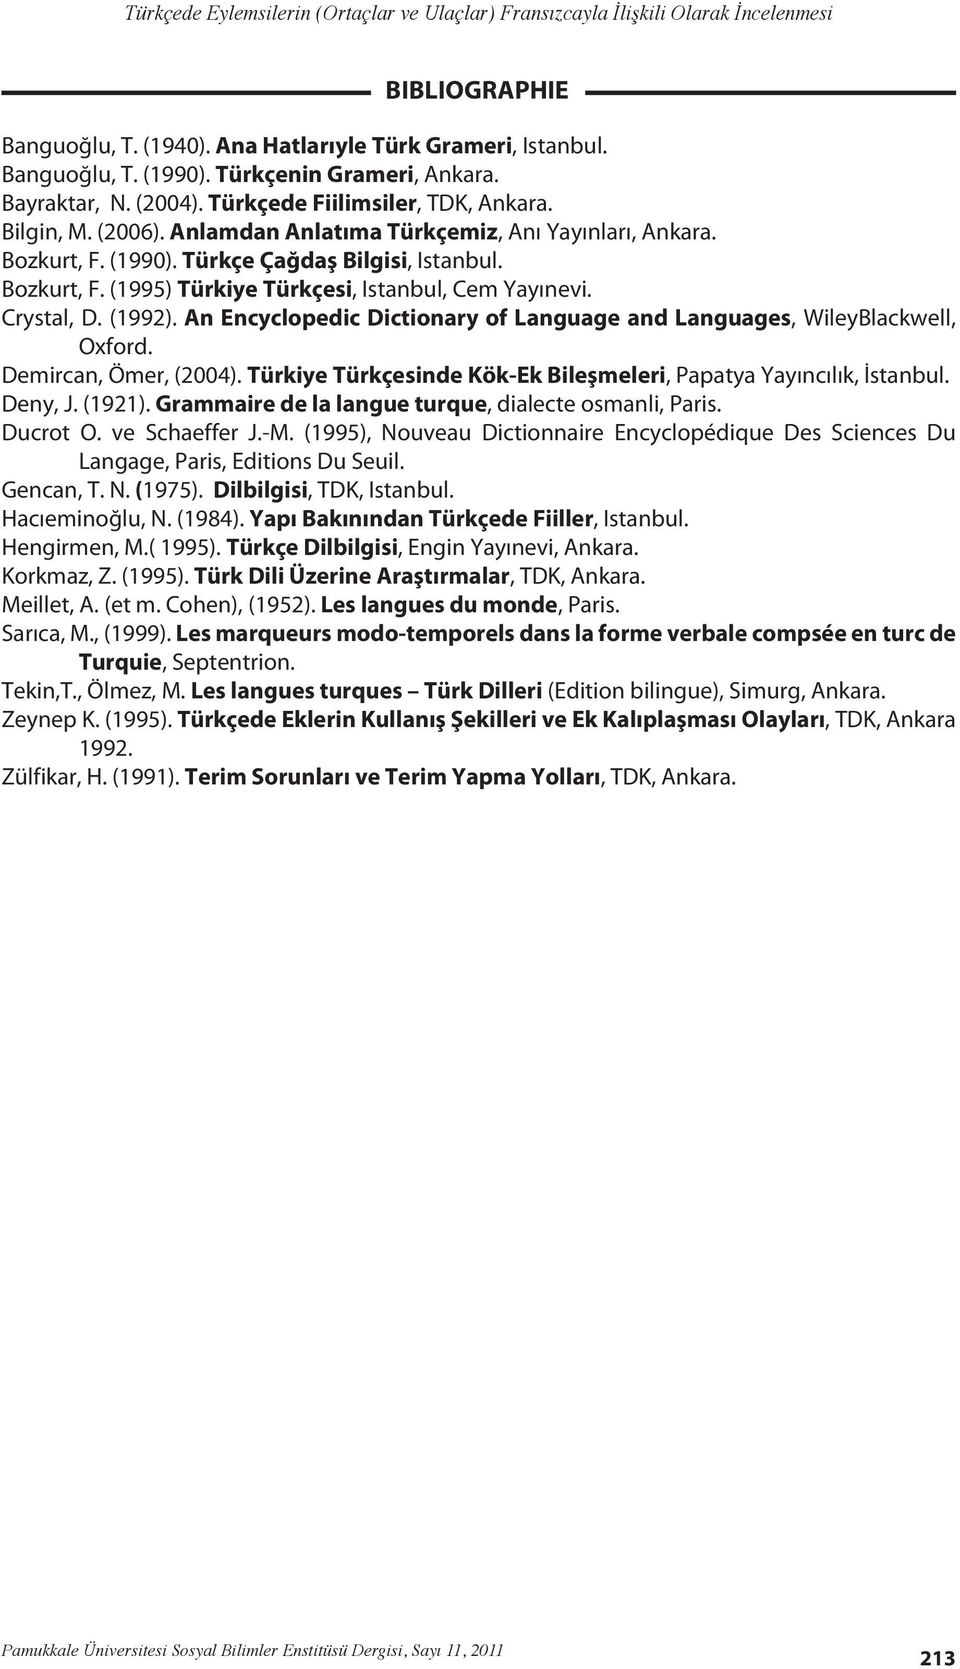 An Encyclopedic Dictionary of Language and Languages, WileyBlackwell, Oxford. Demircan, Ömer, (2004). Türkiye Türkçesinde Kök-Ek Bileşmeleri, Papatya Yayıncılık, İstanbul. Deny, J. (1921).